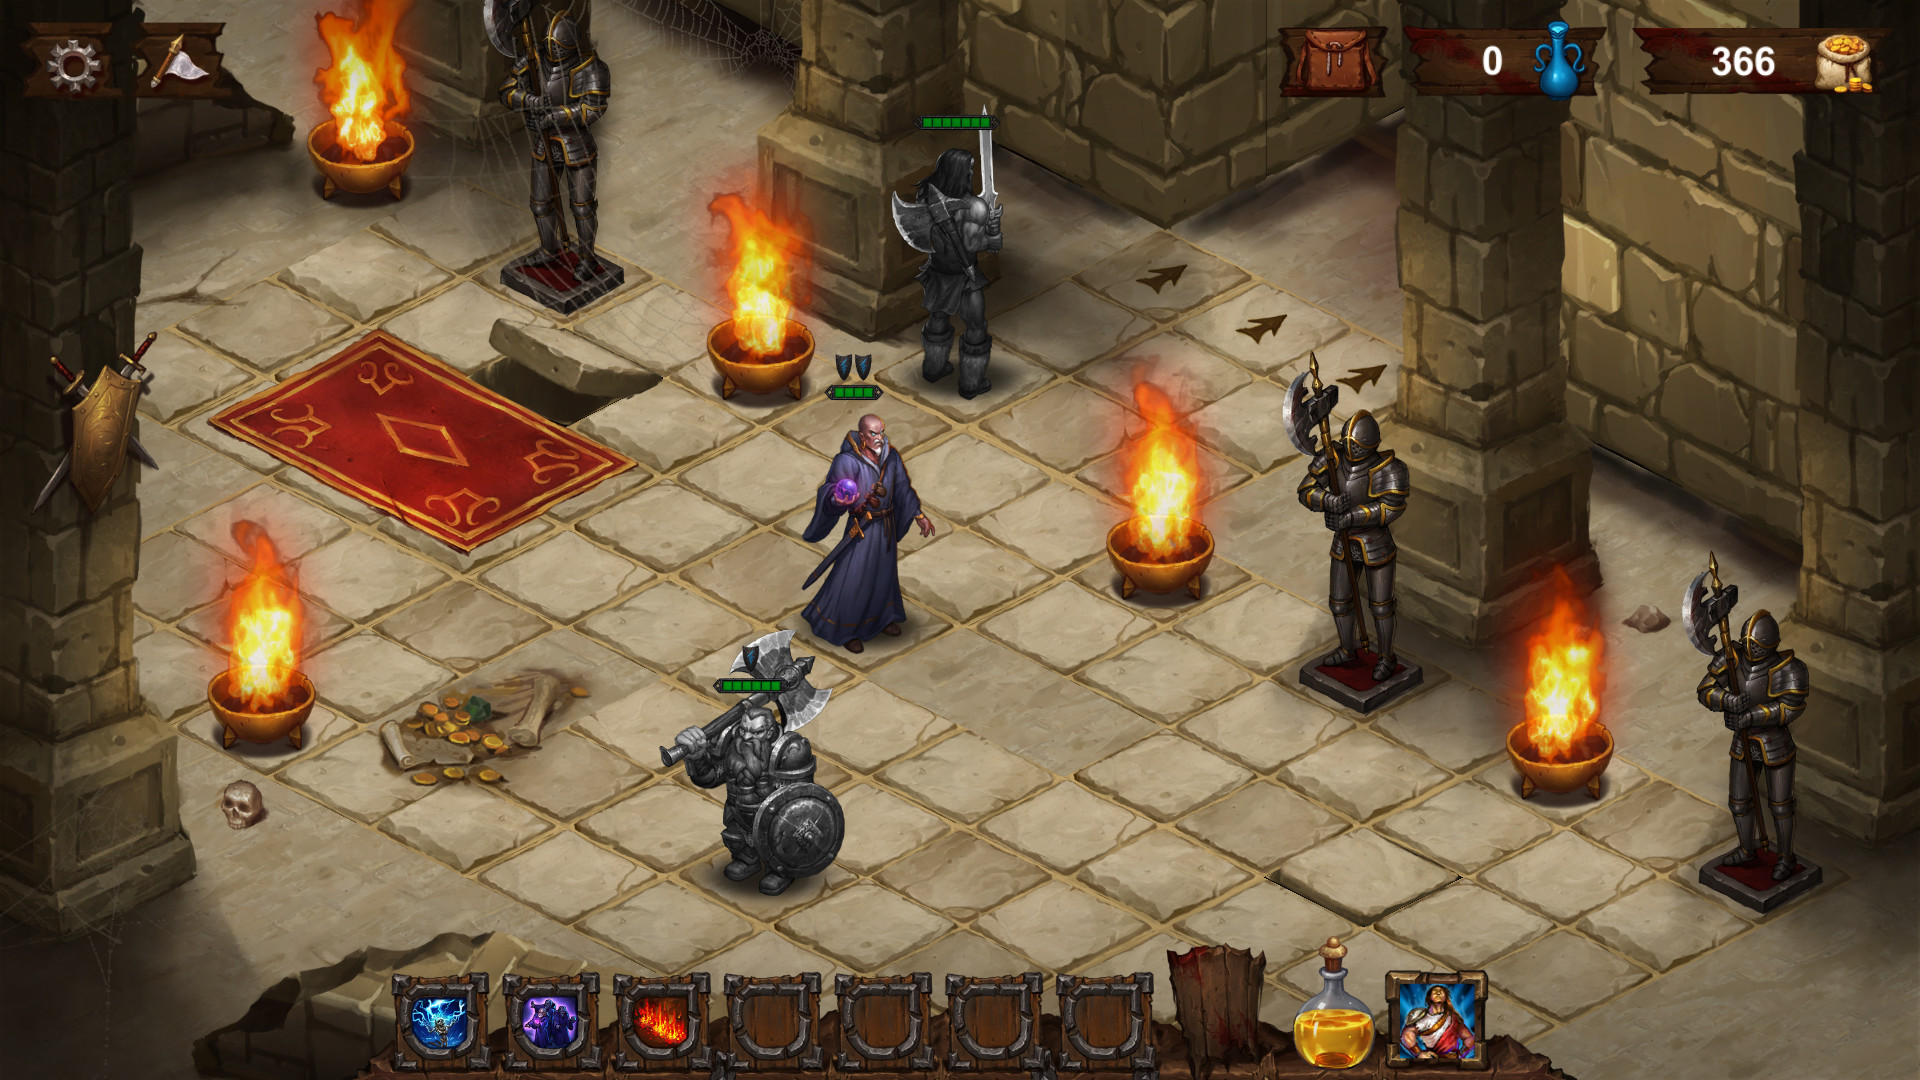 Dark Quest 2 (PC) promete trazer estratégia e dungeons em ótimo